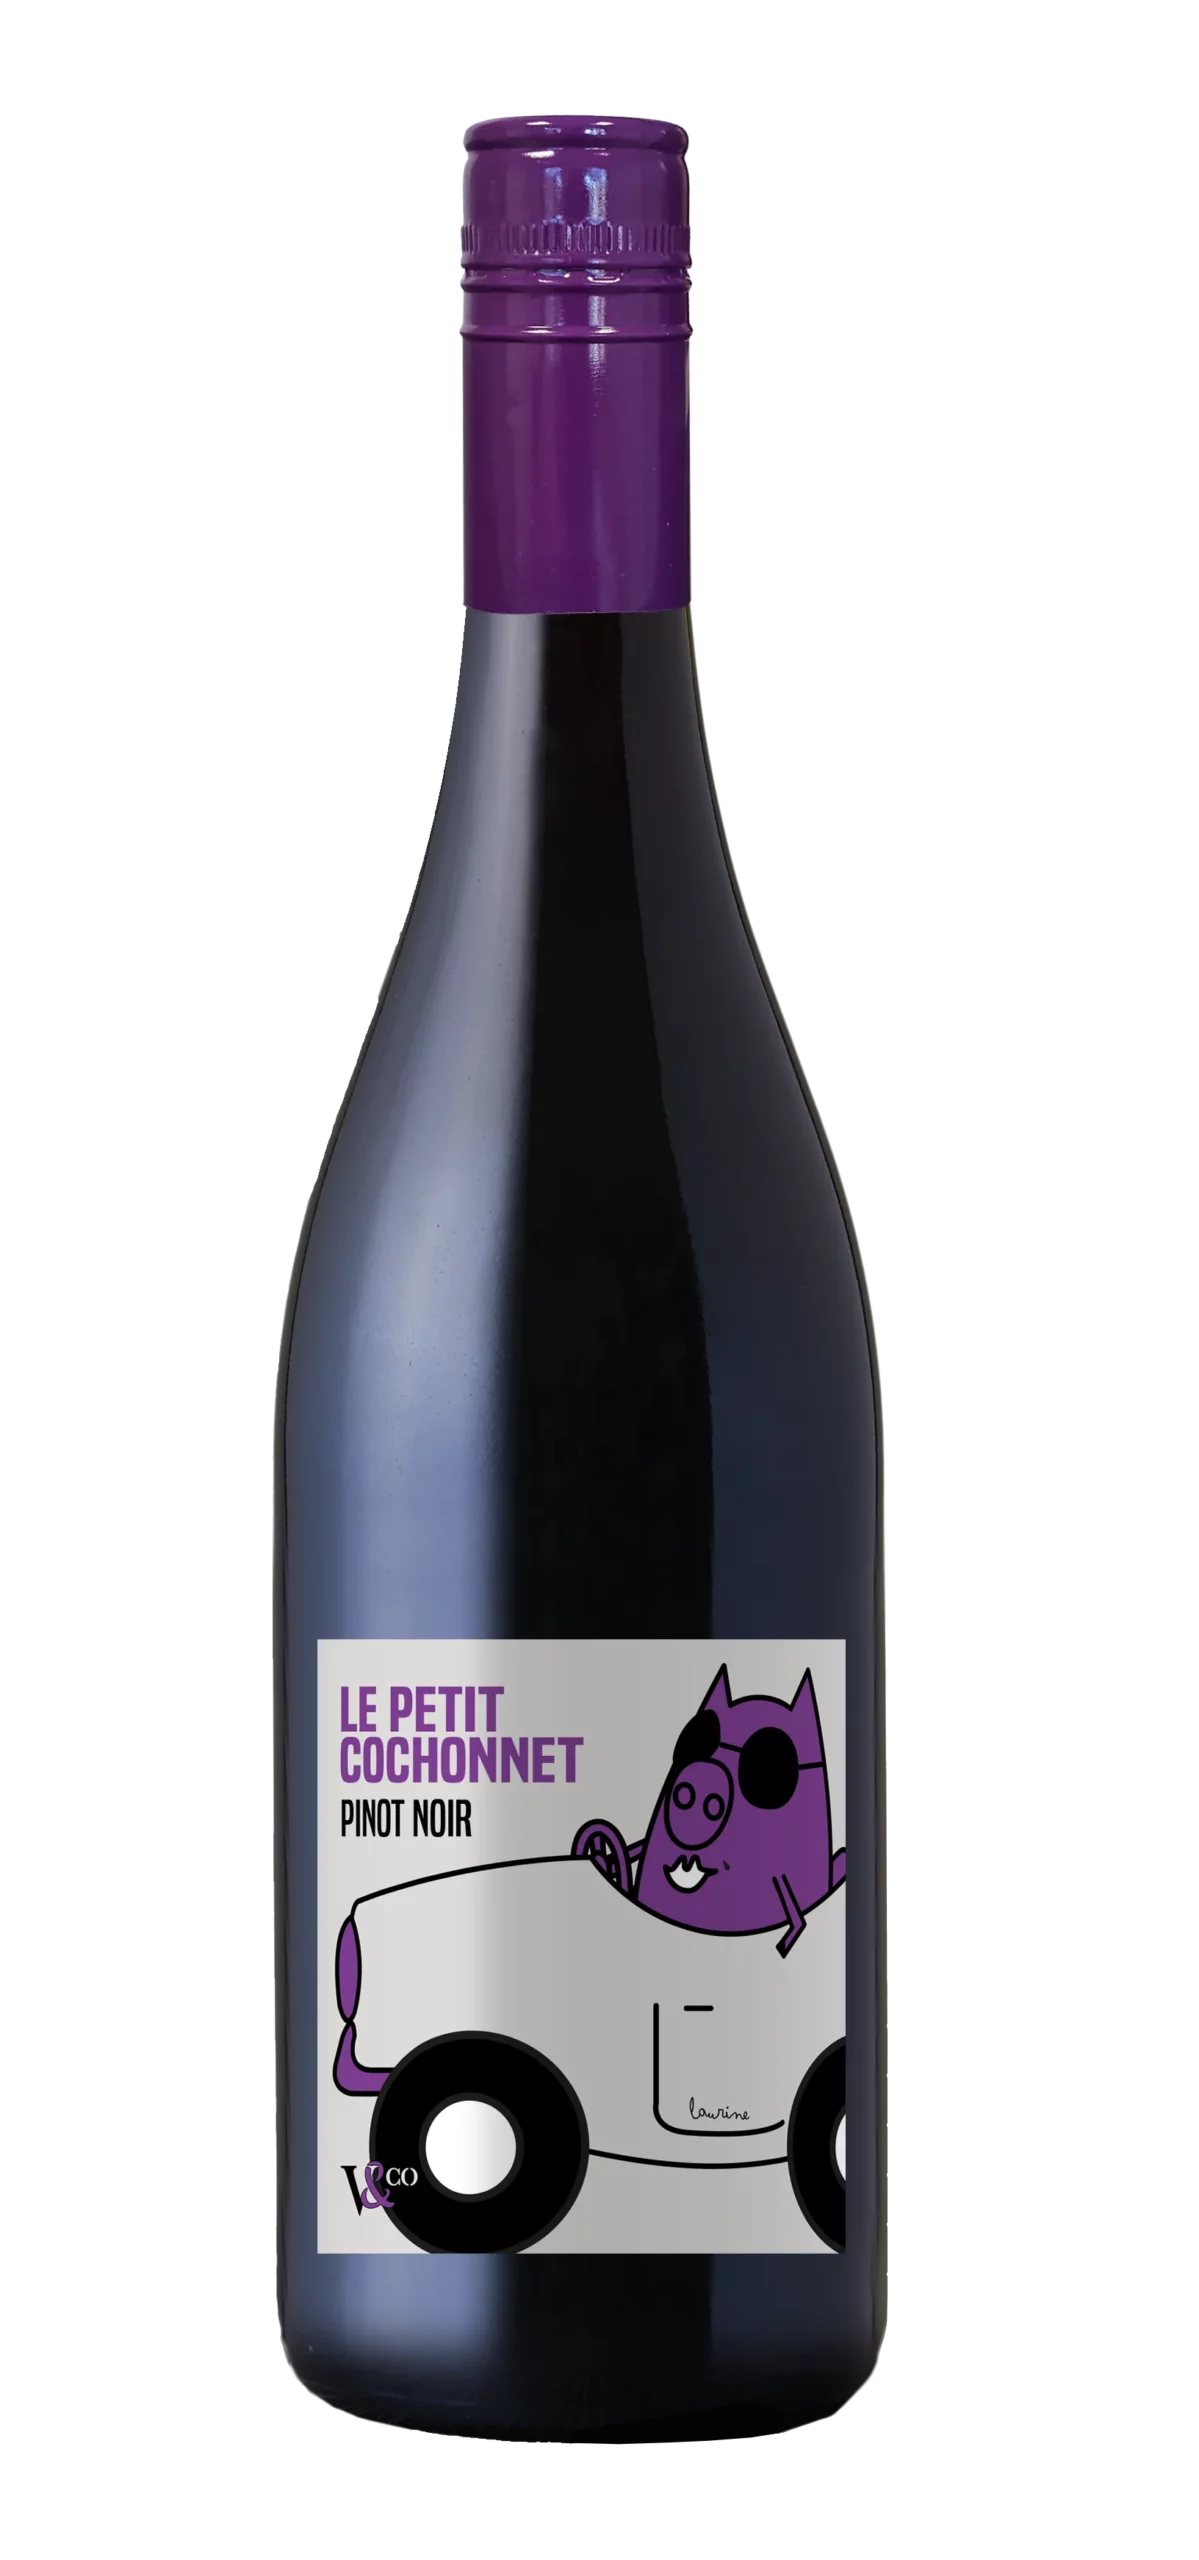 Le Petit Cochonnet – Pinot noir